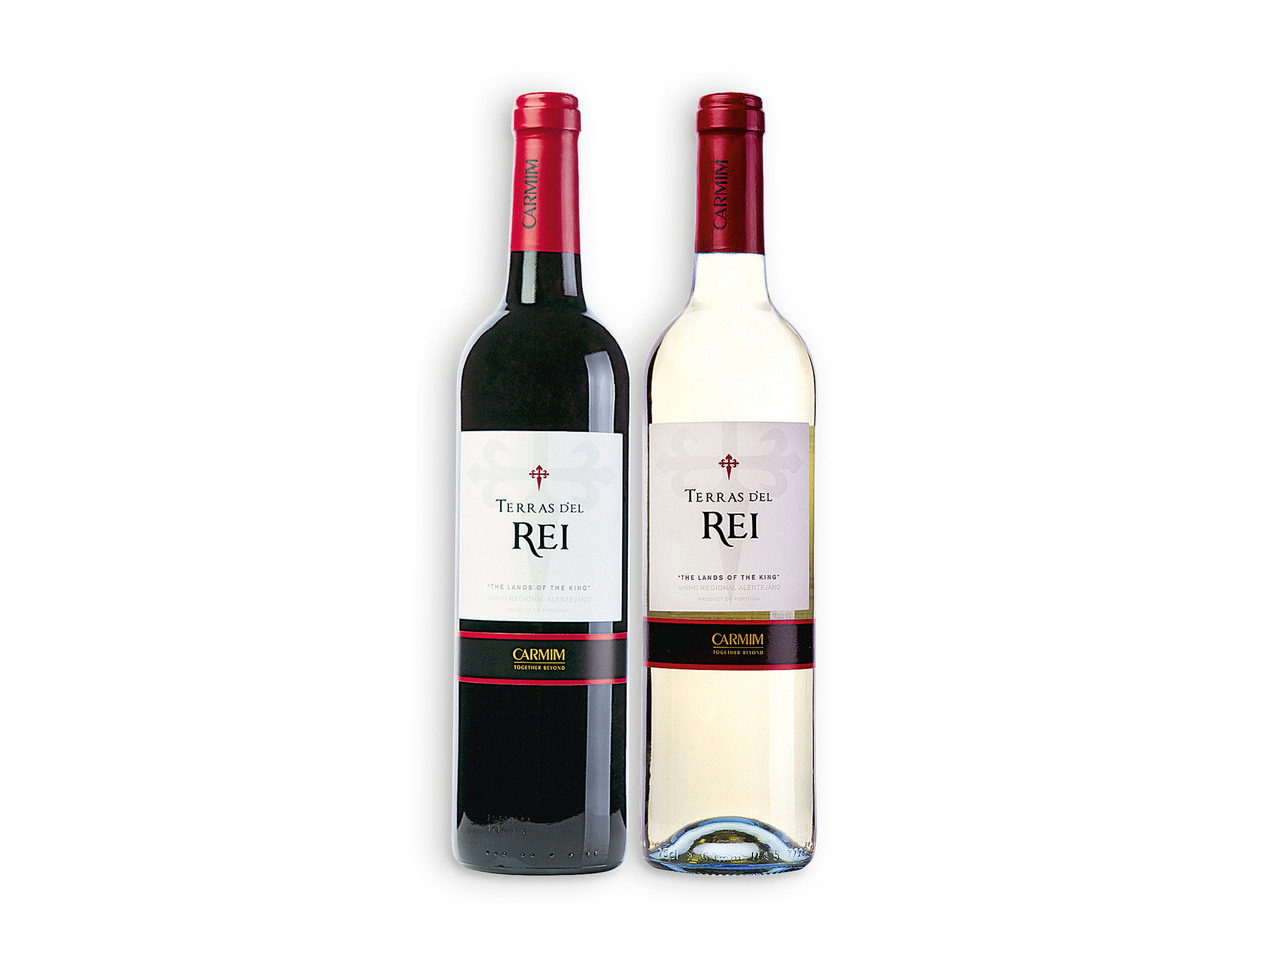 TERRAS D'EL REI(R) Vinho Tinto / Branco Regional Alentejano